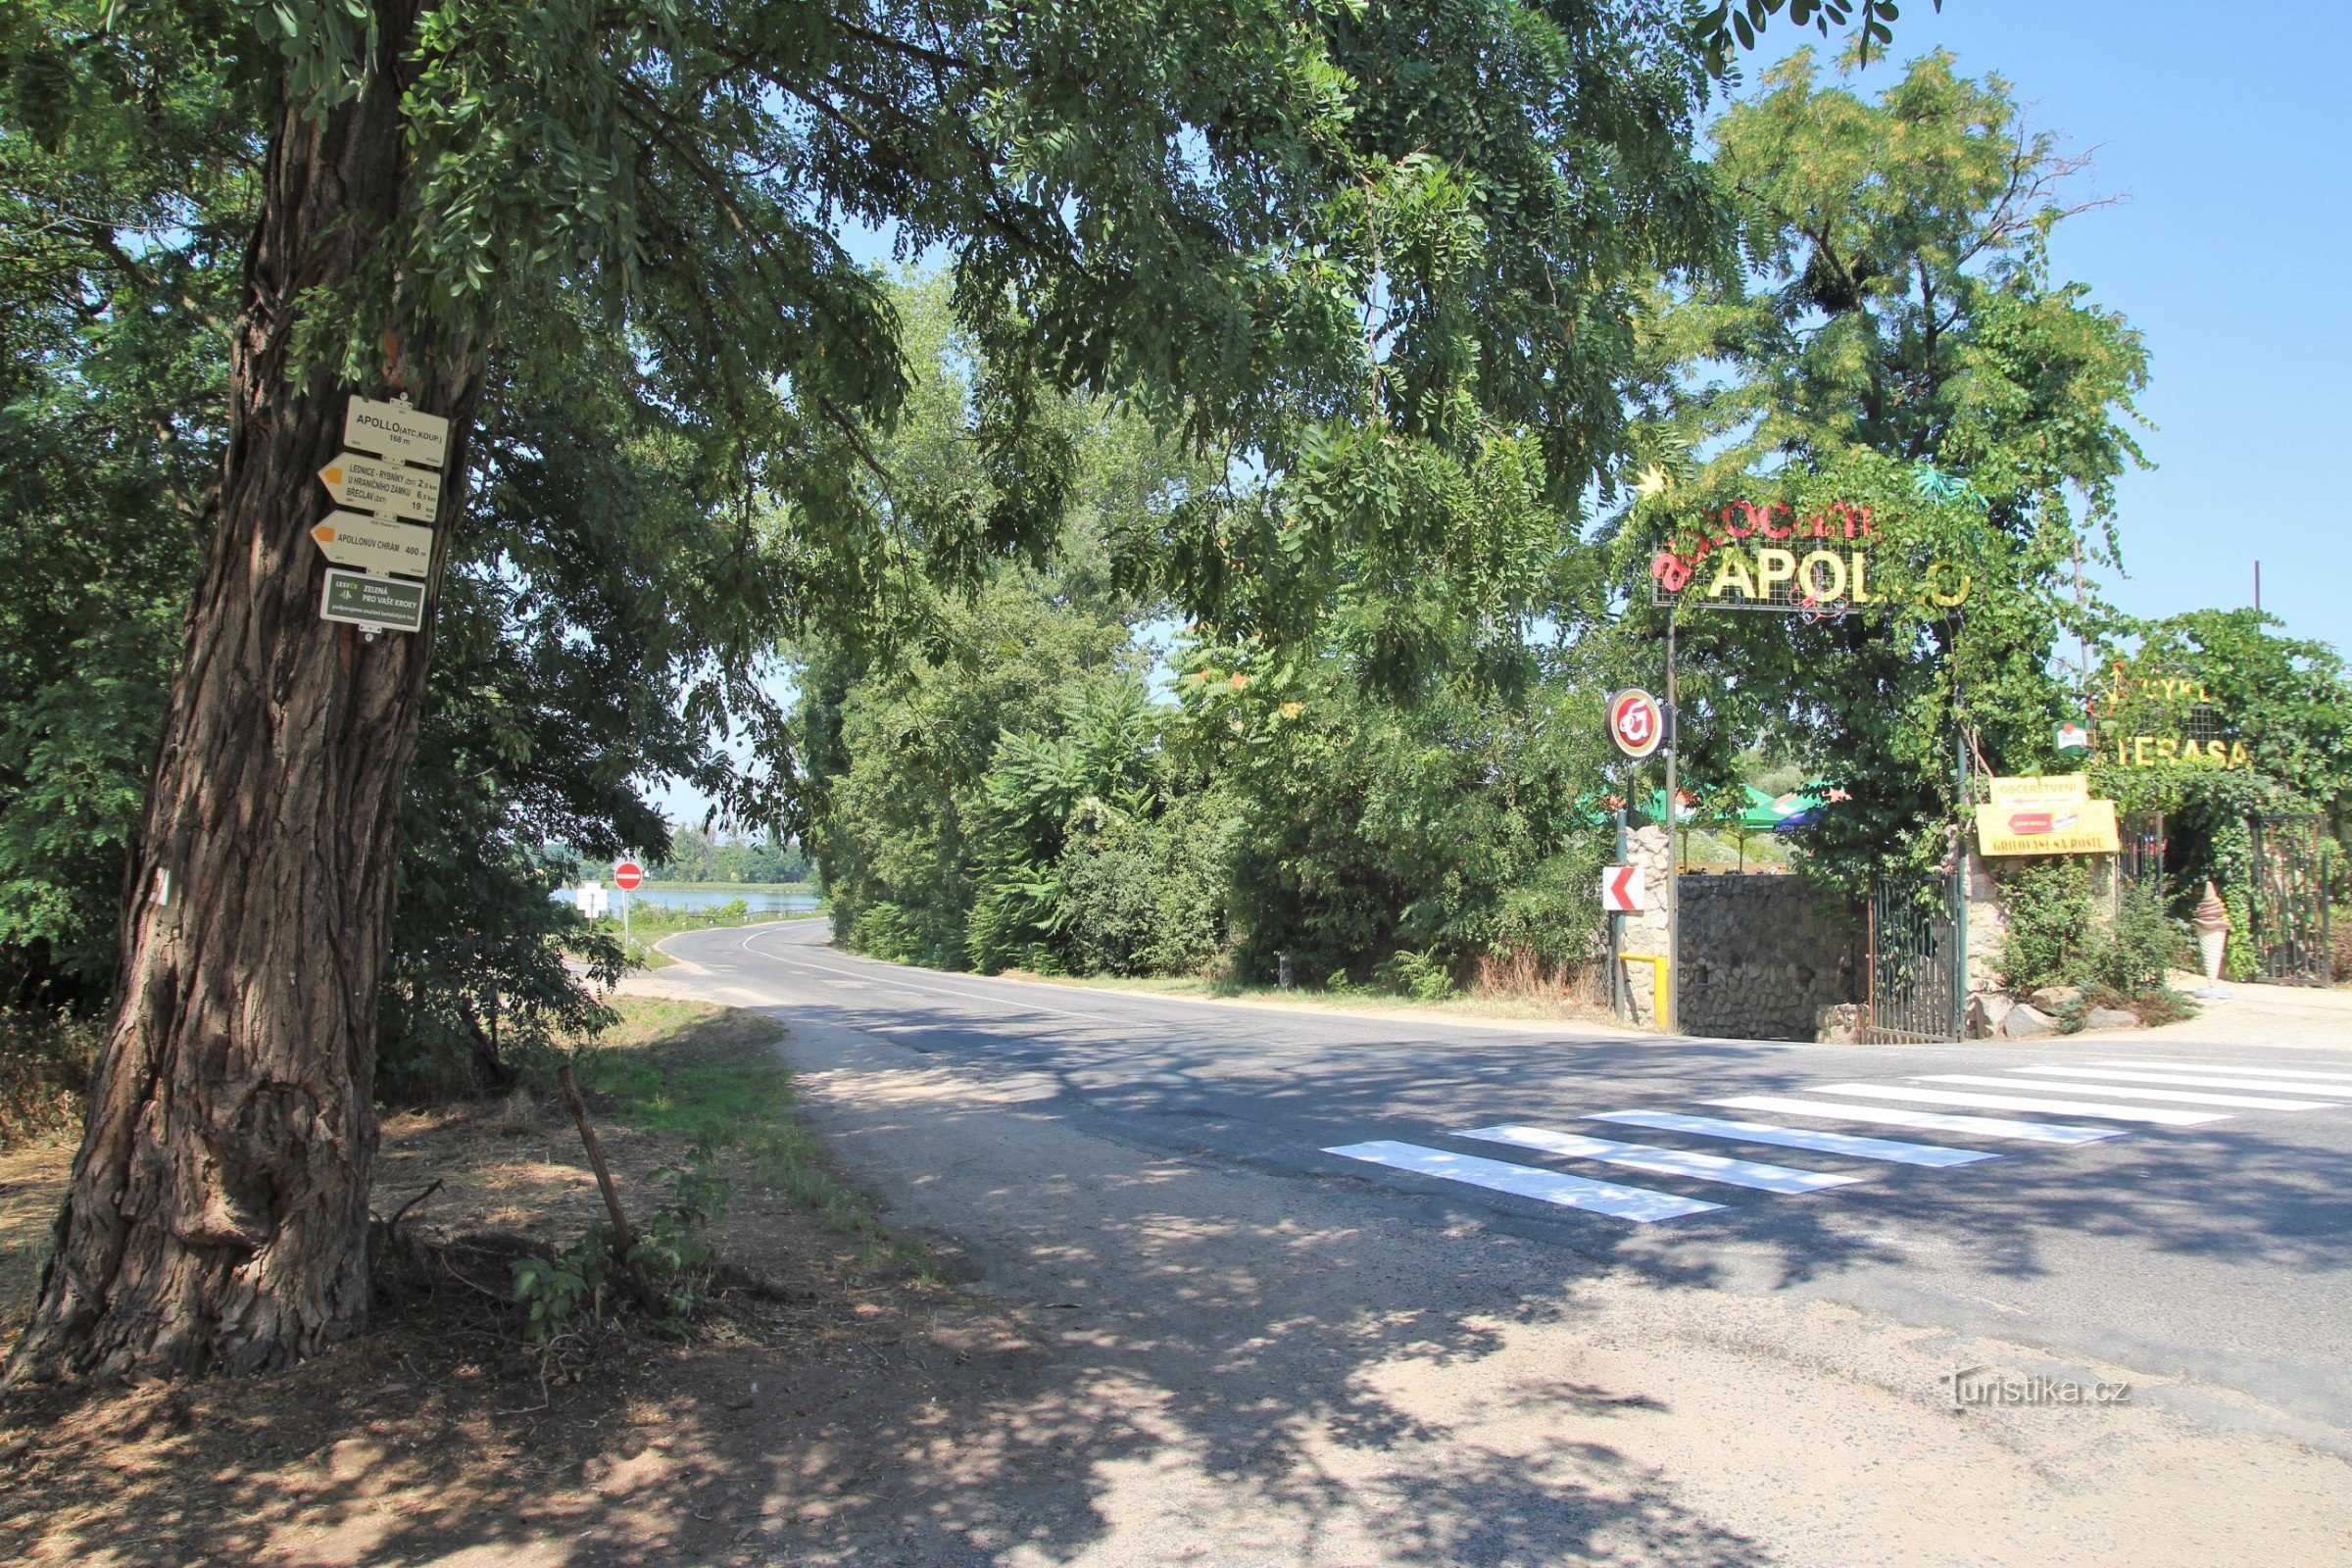 Apollo turistknutpunkt ligger mittemot ingången till lägret med samma namn